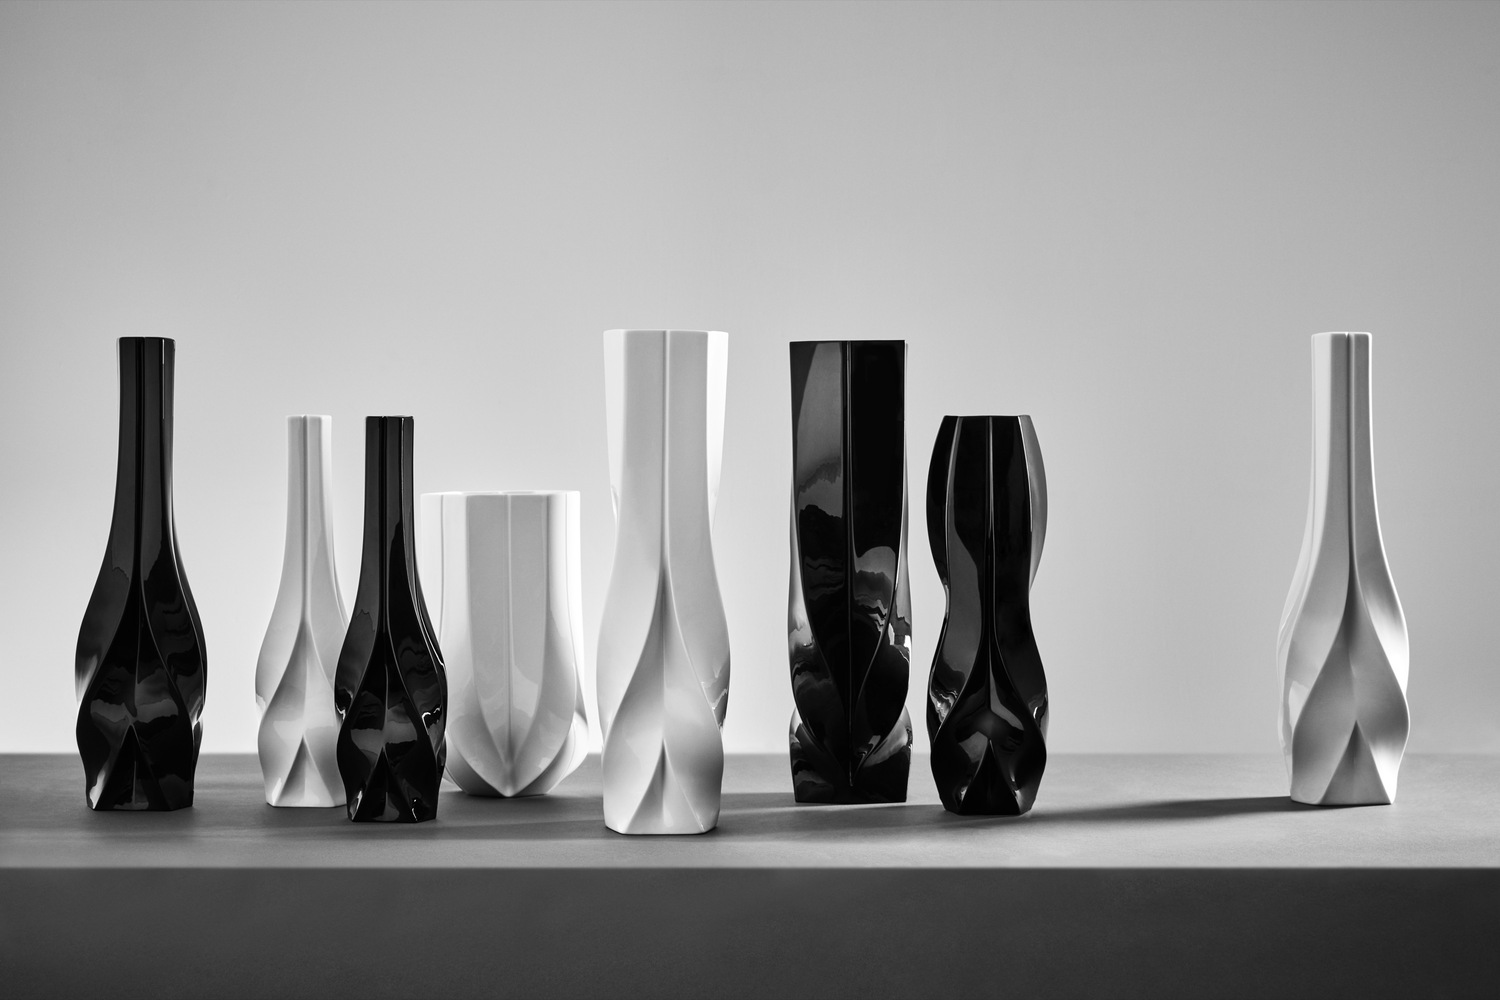 مجموعه طراحی Zaha Hadid در Maison et Objet پاریس نمایش داده می شود